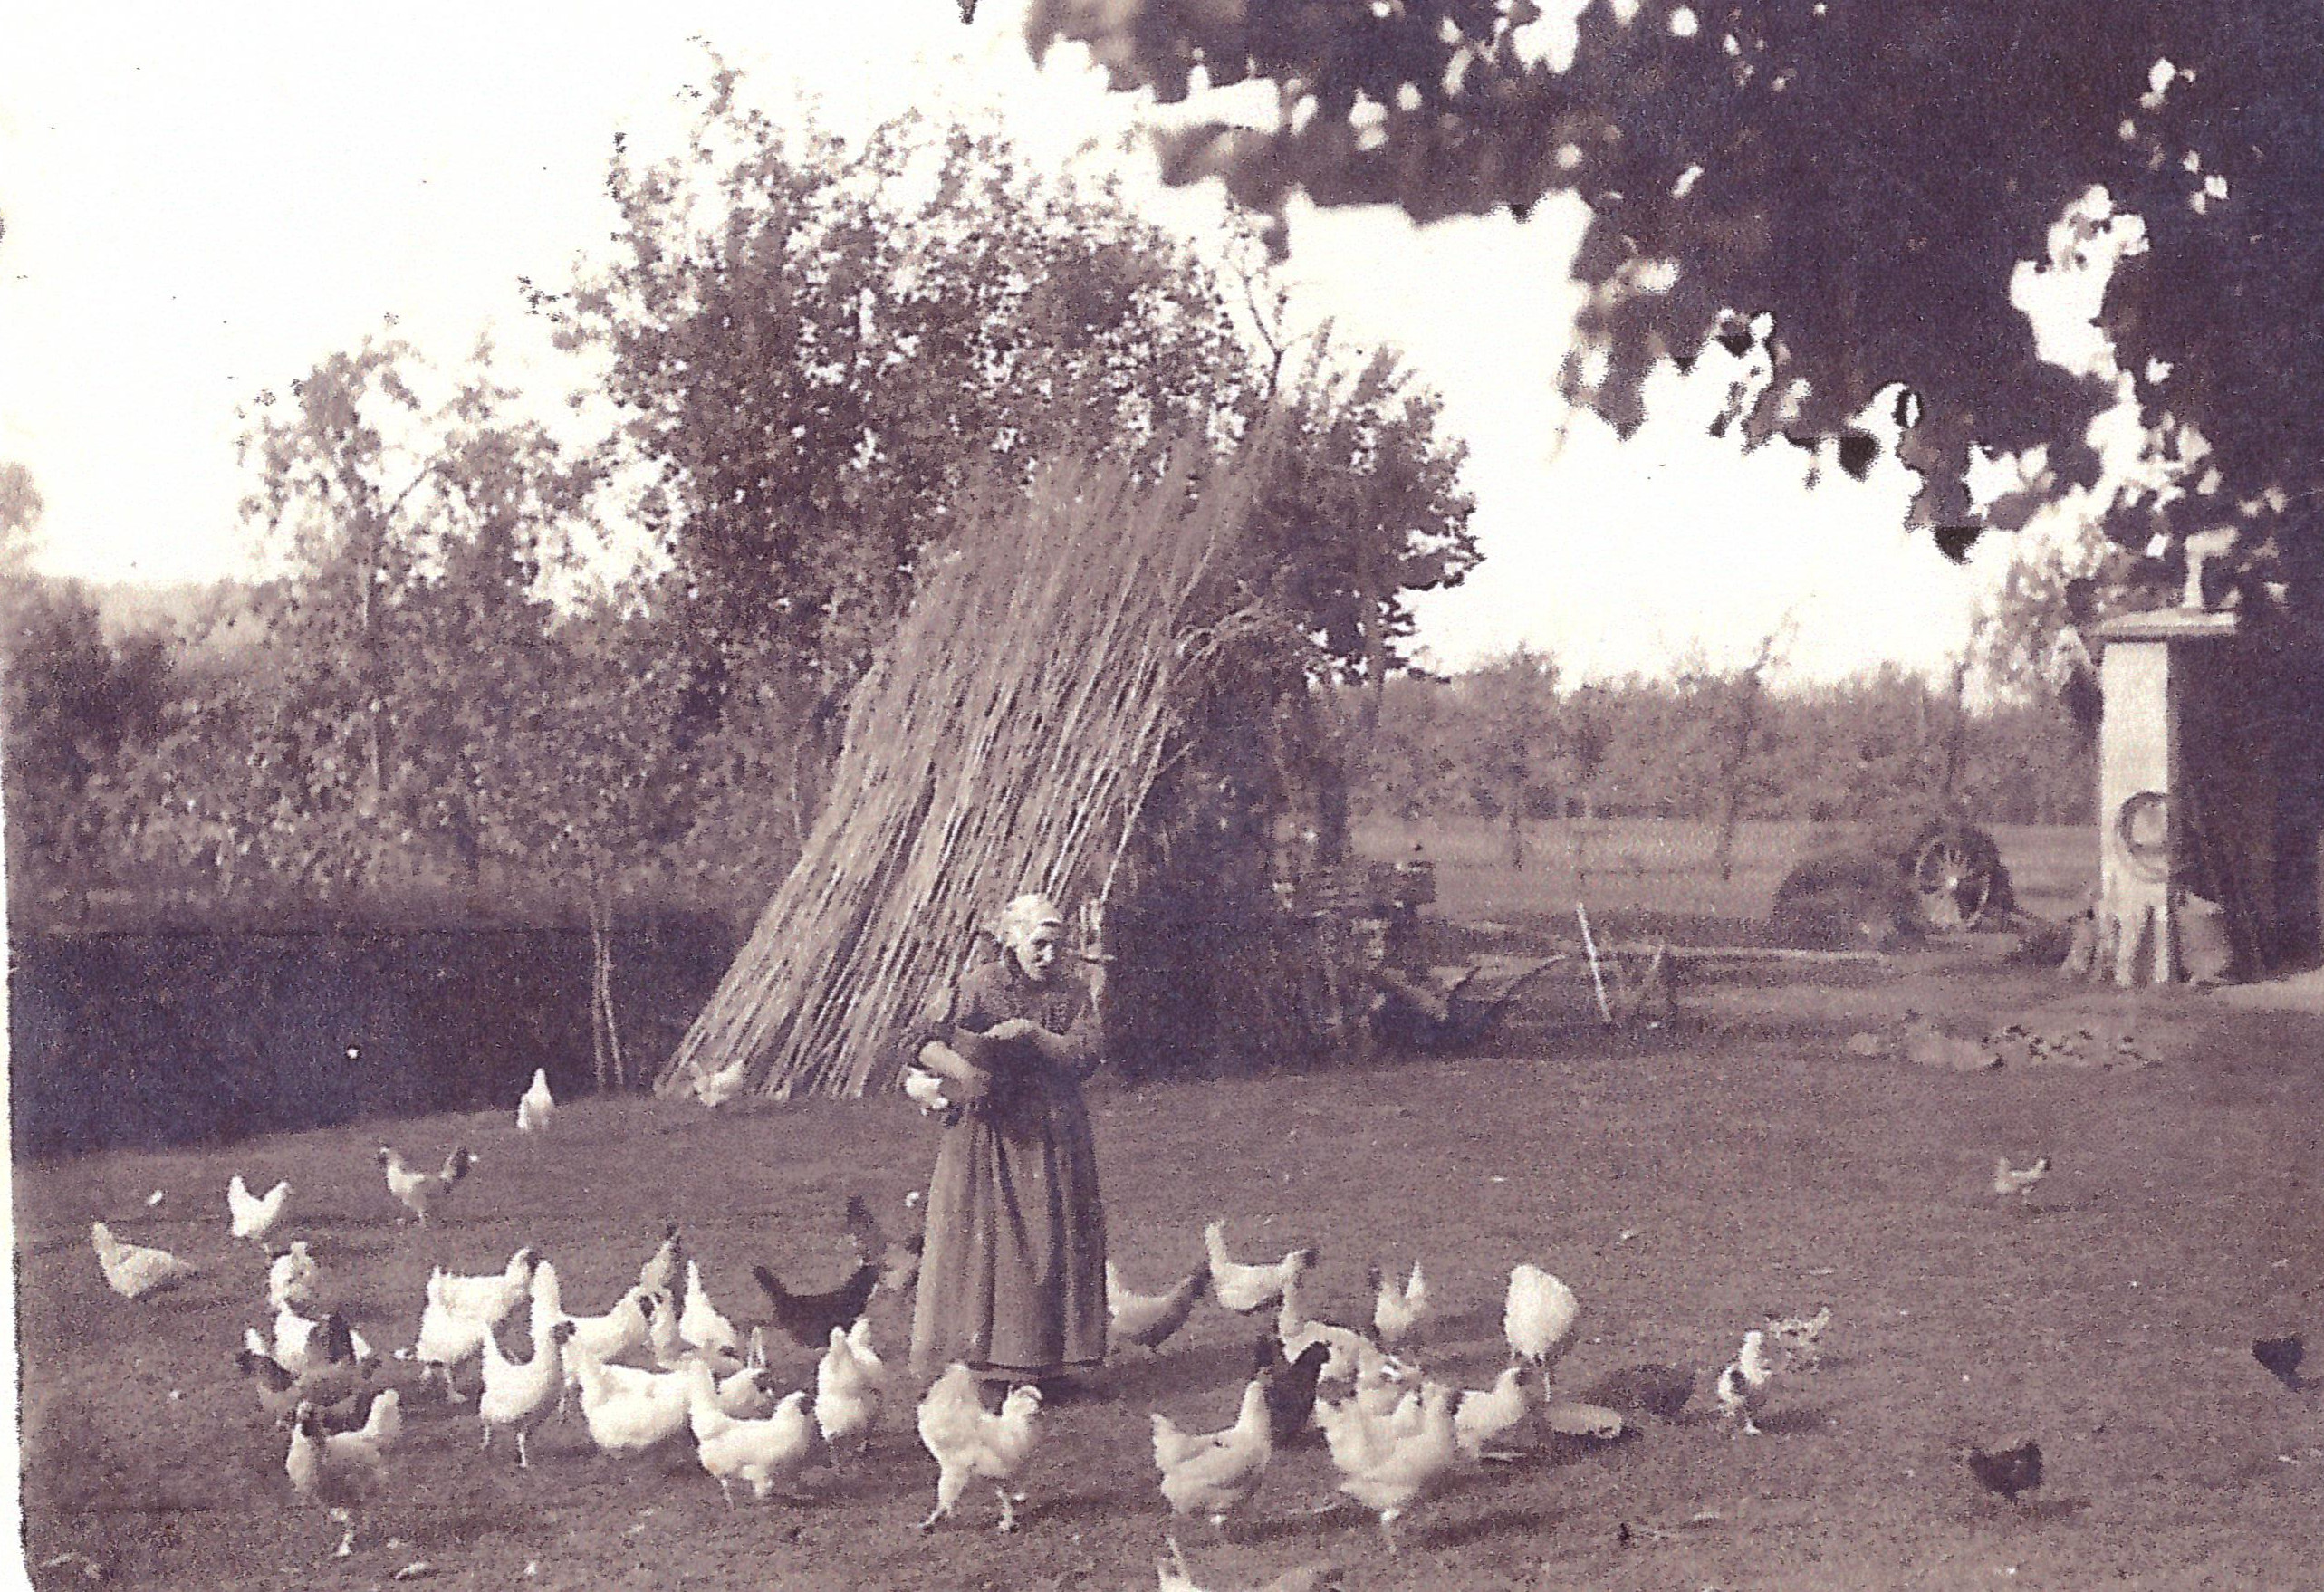 Foto primi Novecento. Galline nell'aia e macero da canapa.